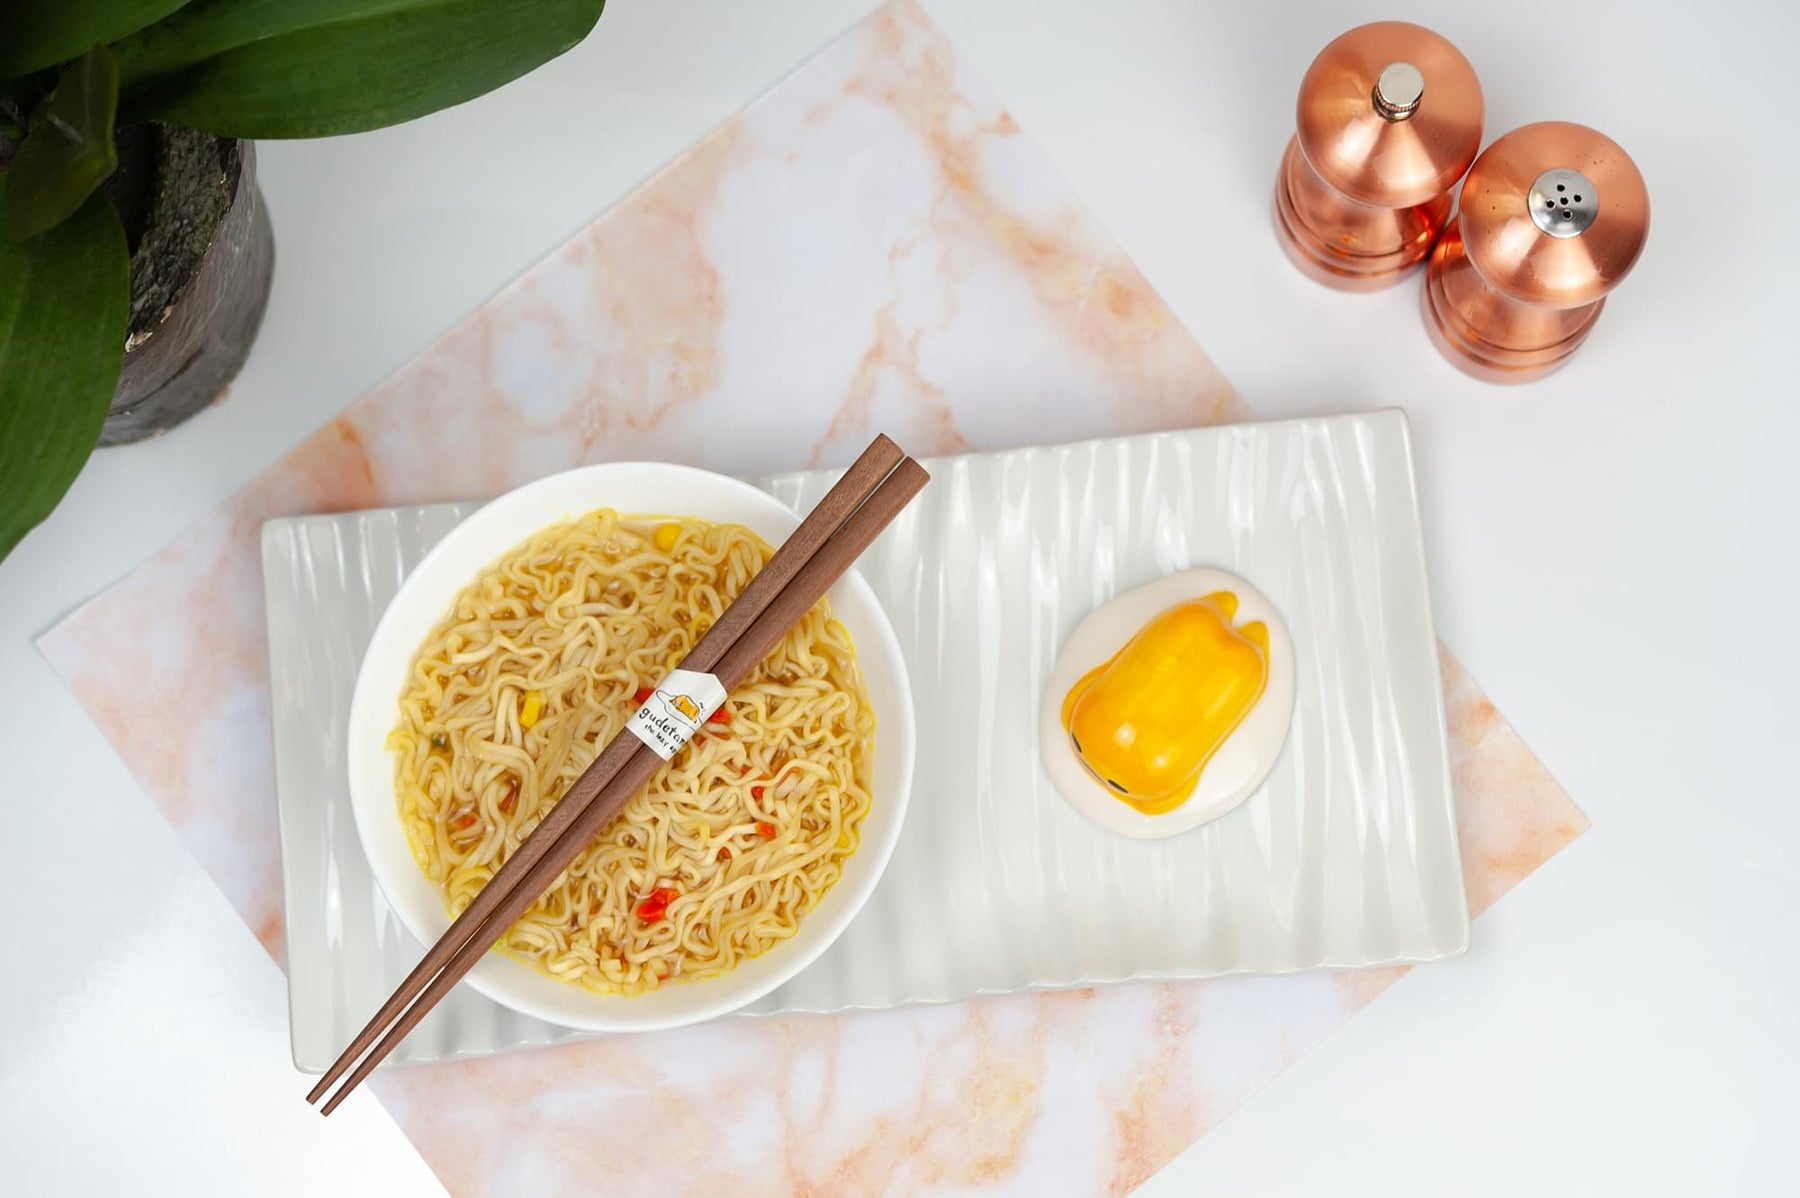 Gudetama The Lazy Egg Chopstick Set & Ceramic Holder | Reusable Chopsticks Set